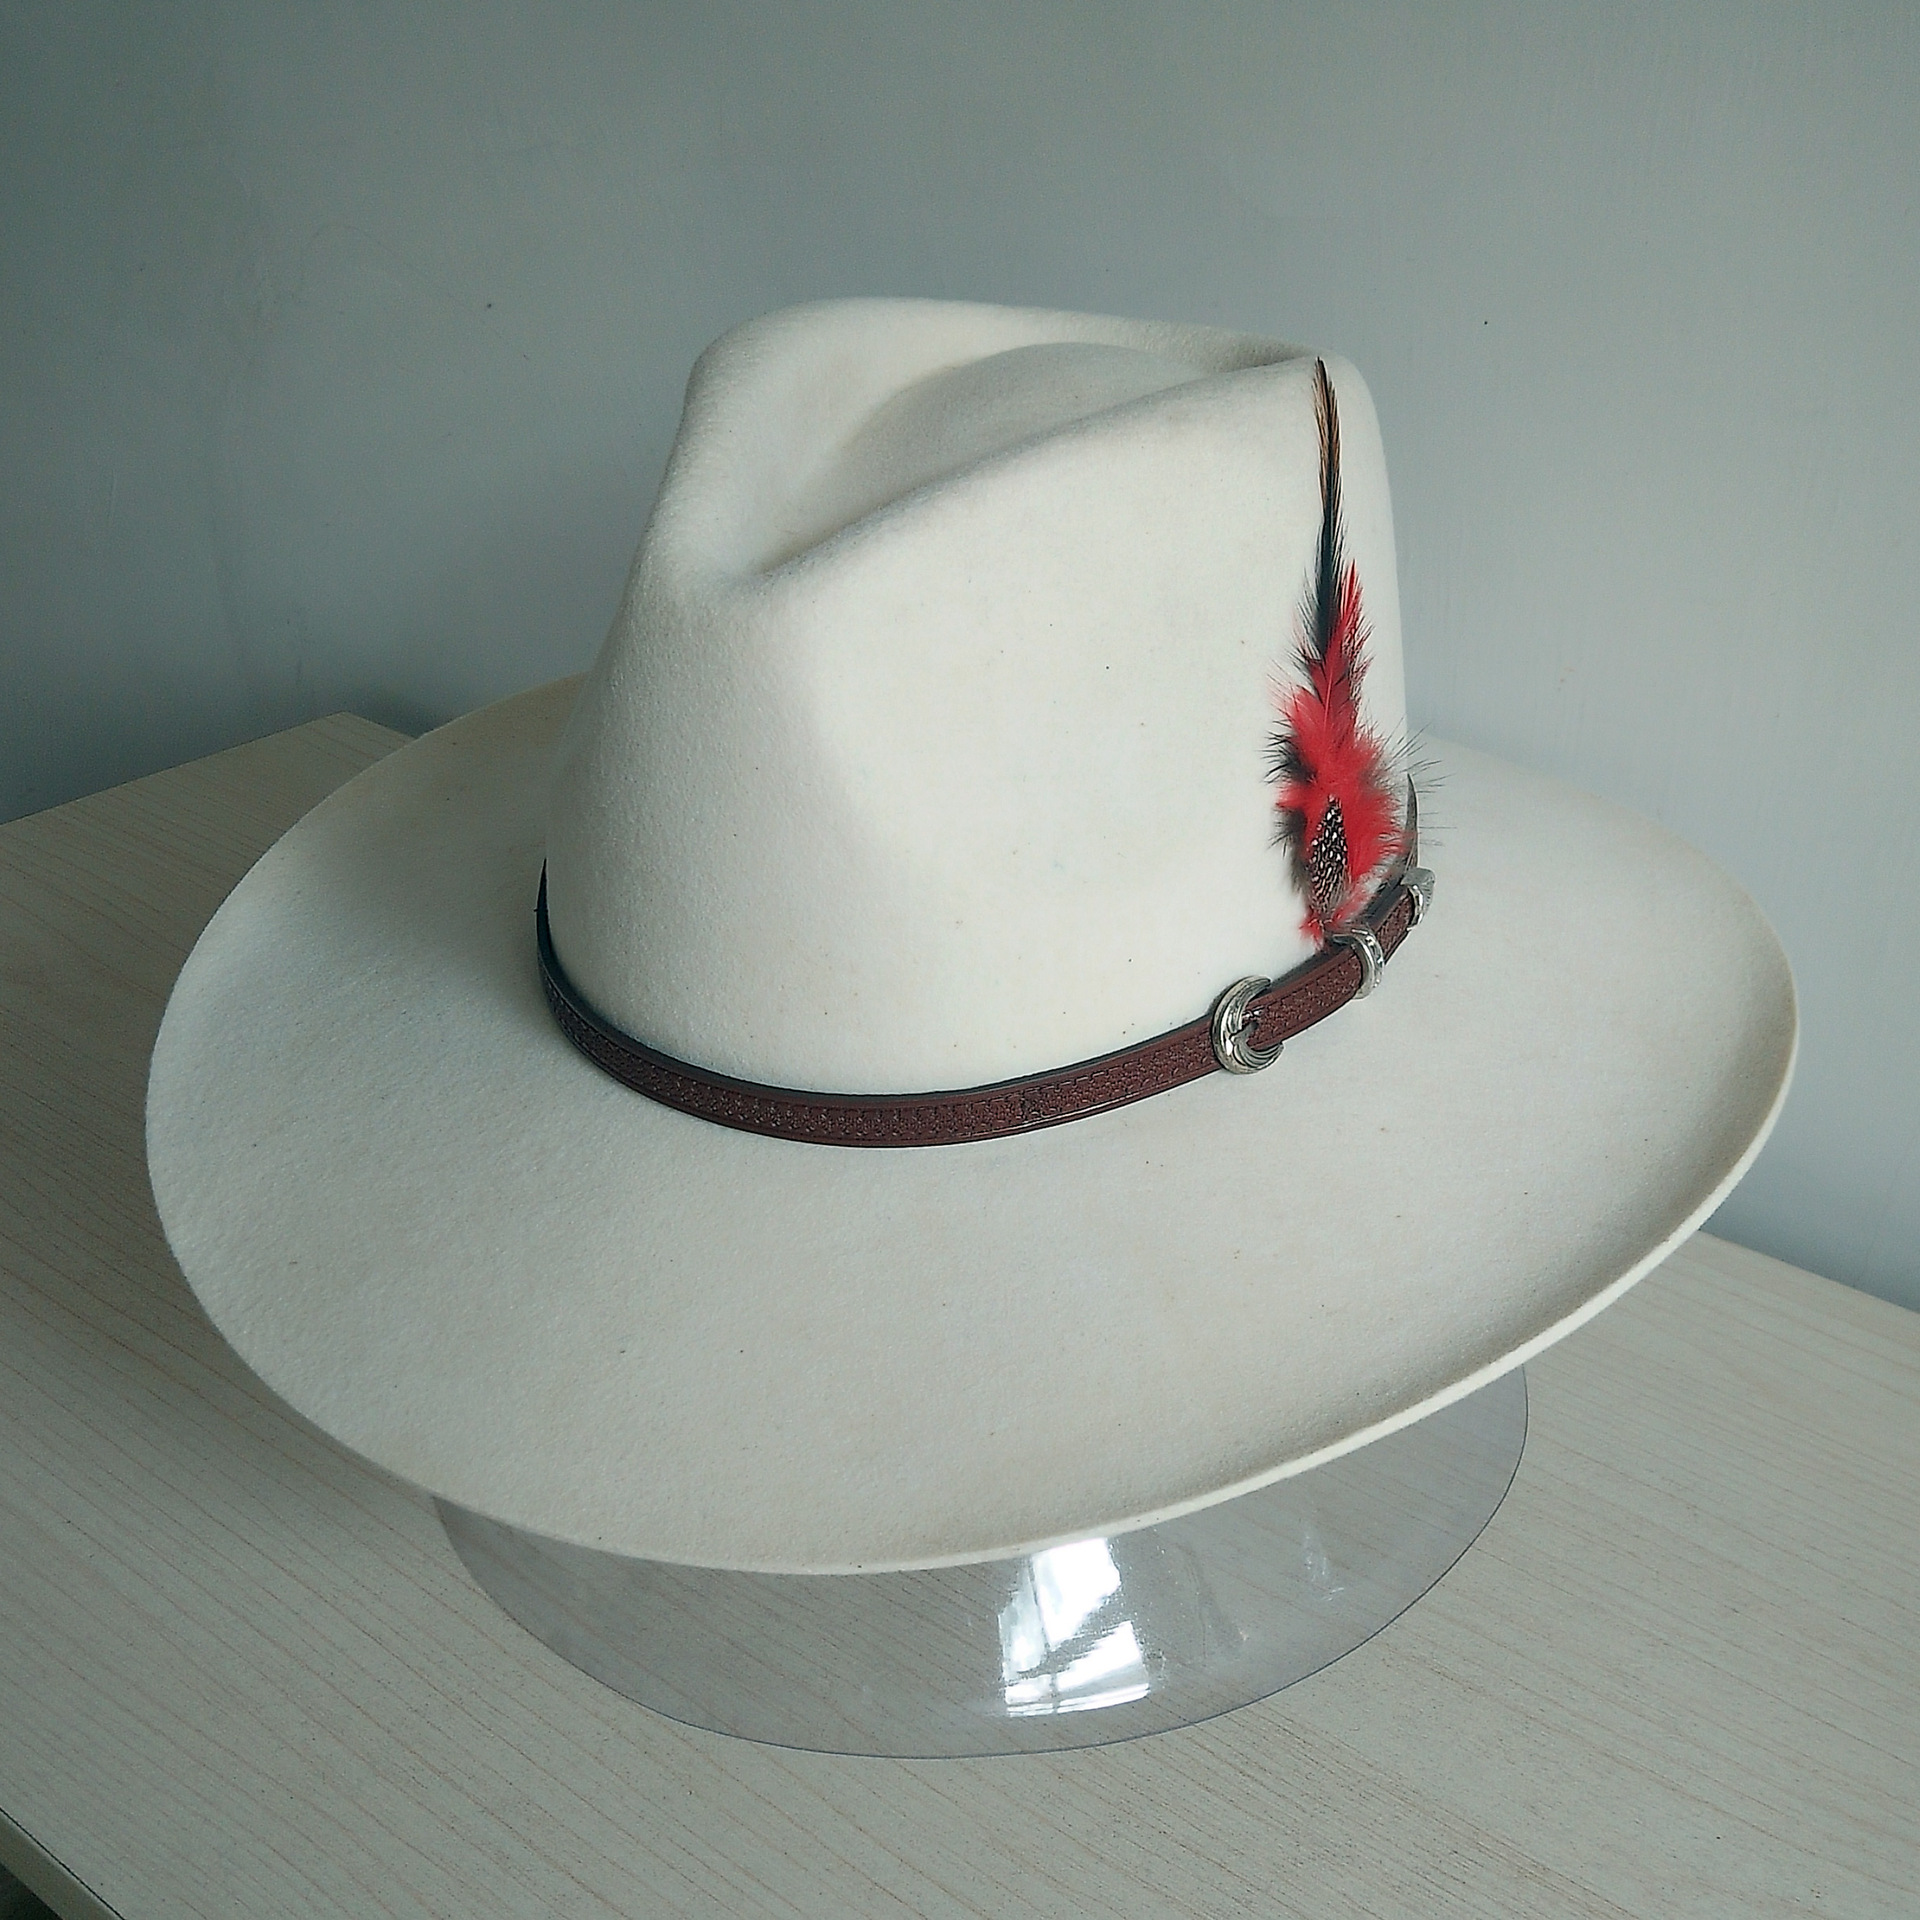 在木头的皮革澳大利亚牛仔帽 库存照片. 图片 包括有 纹理, 佩带, 日志, 表面, 牛仔, 板条, 褐色 - 44013744